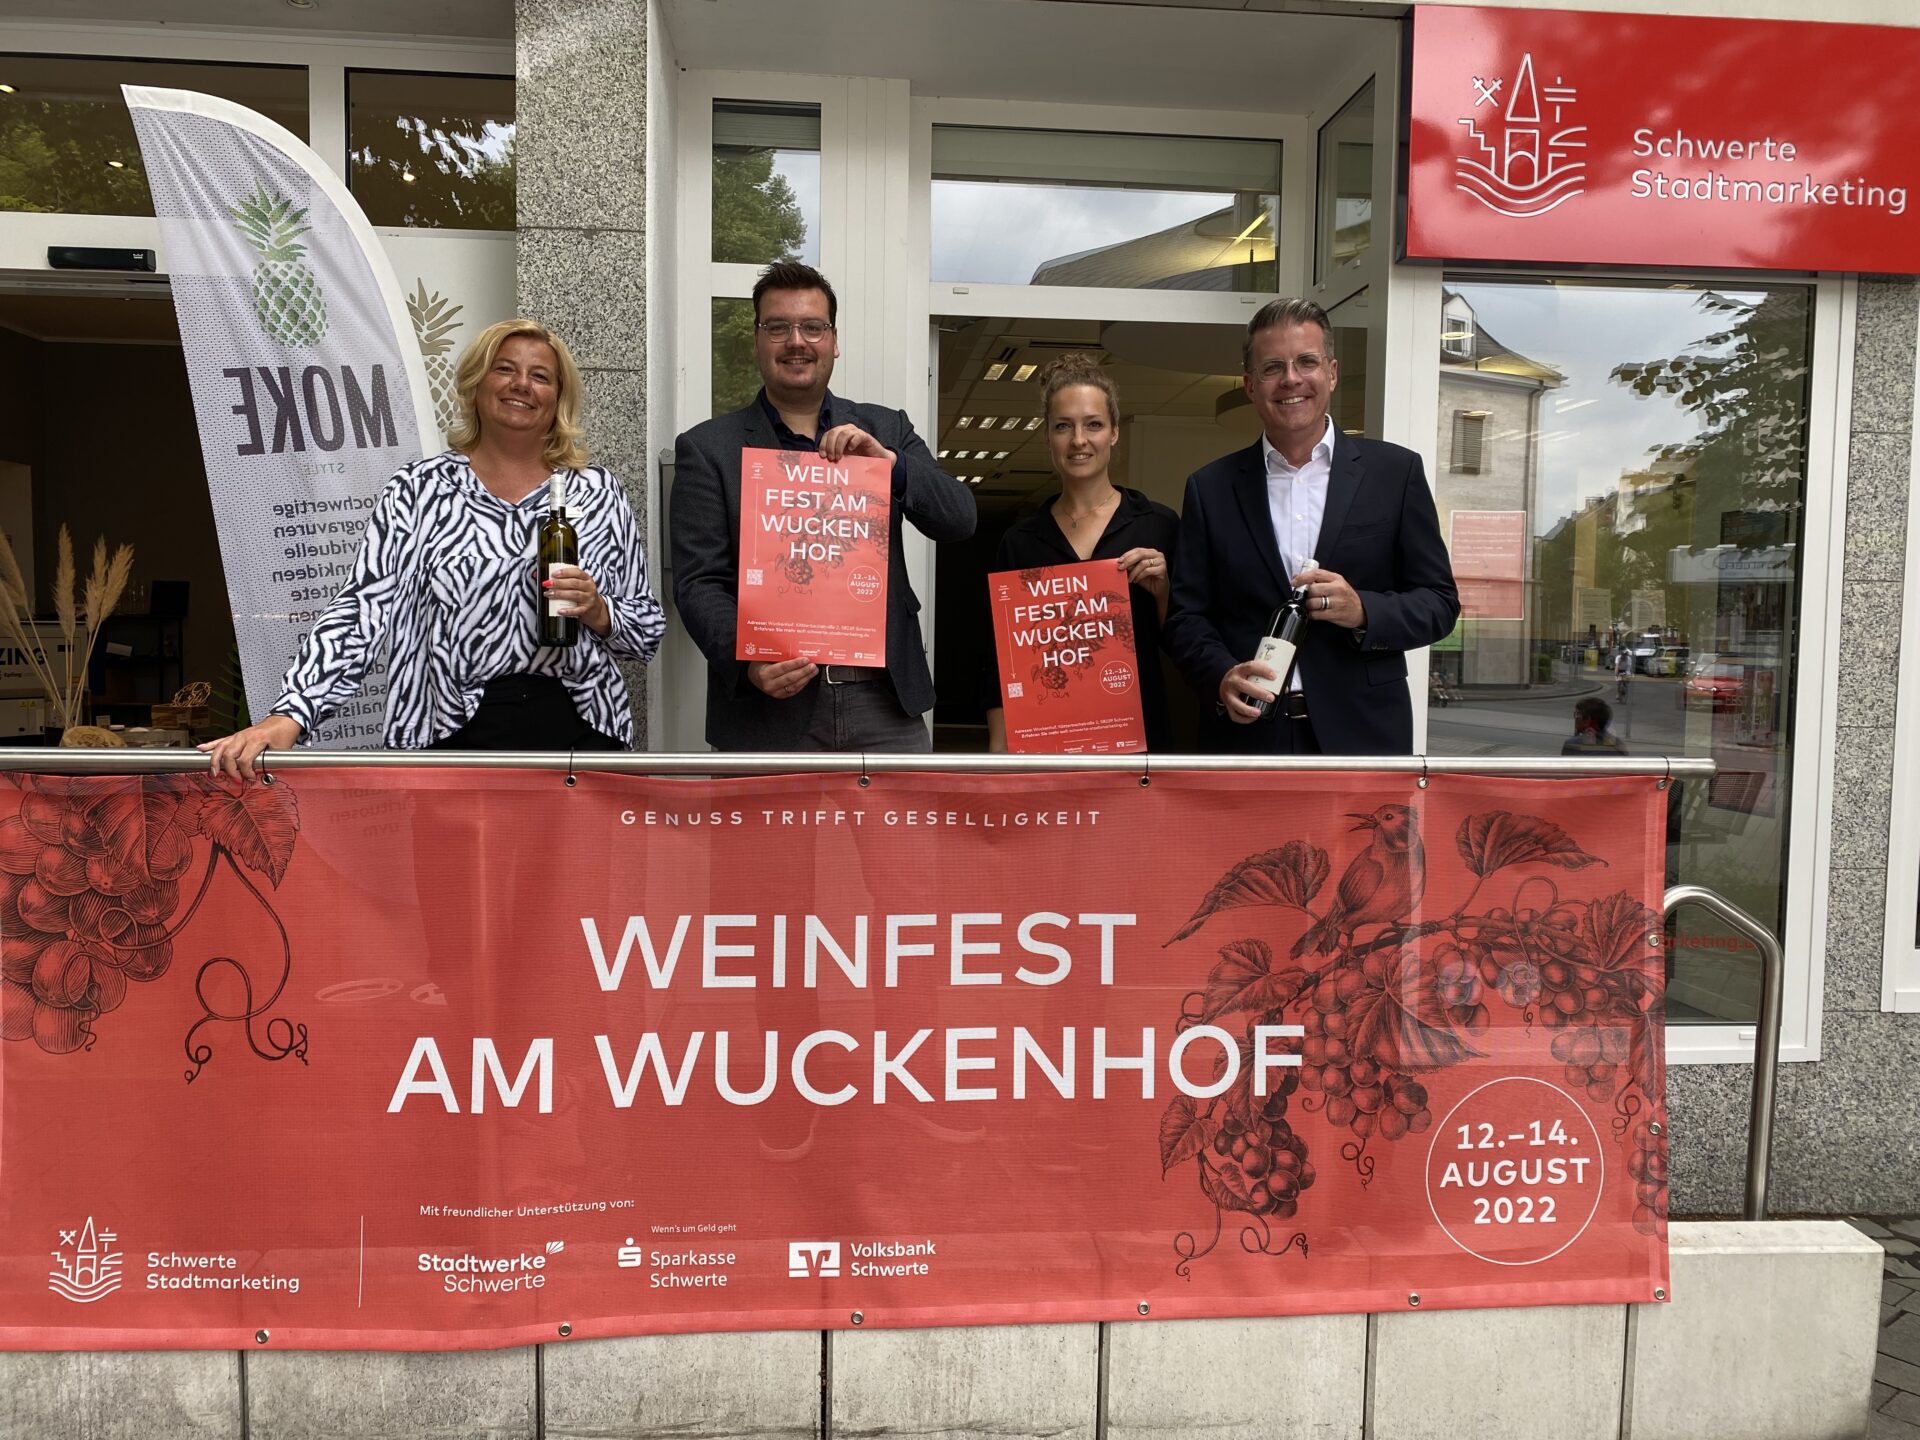 Weinfest am Wuckenhof: Neues Genussevent vom 12.-14. August